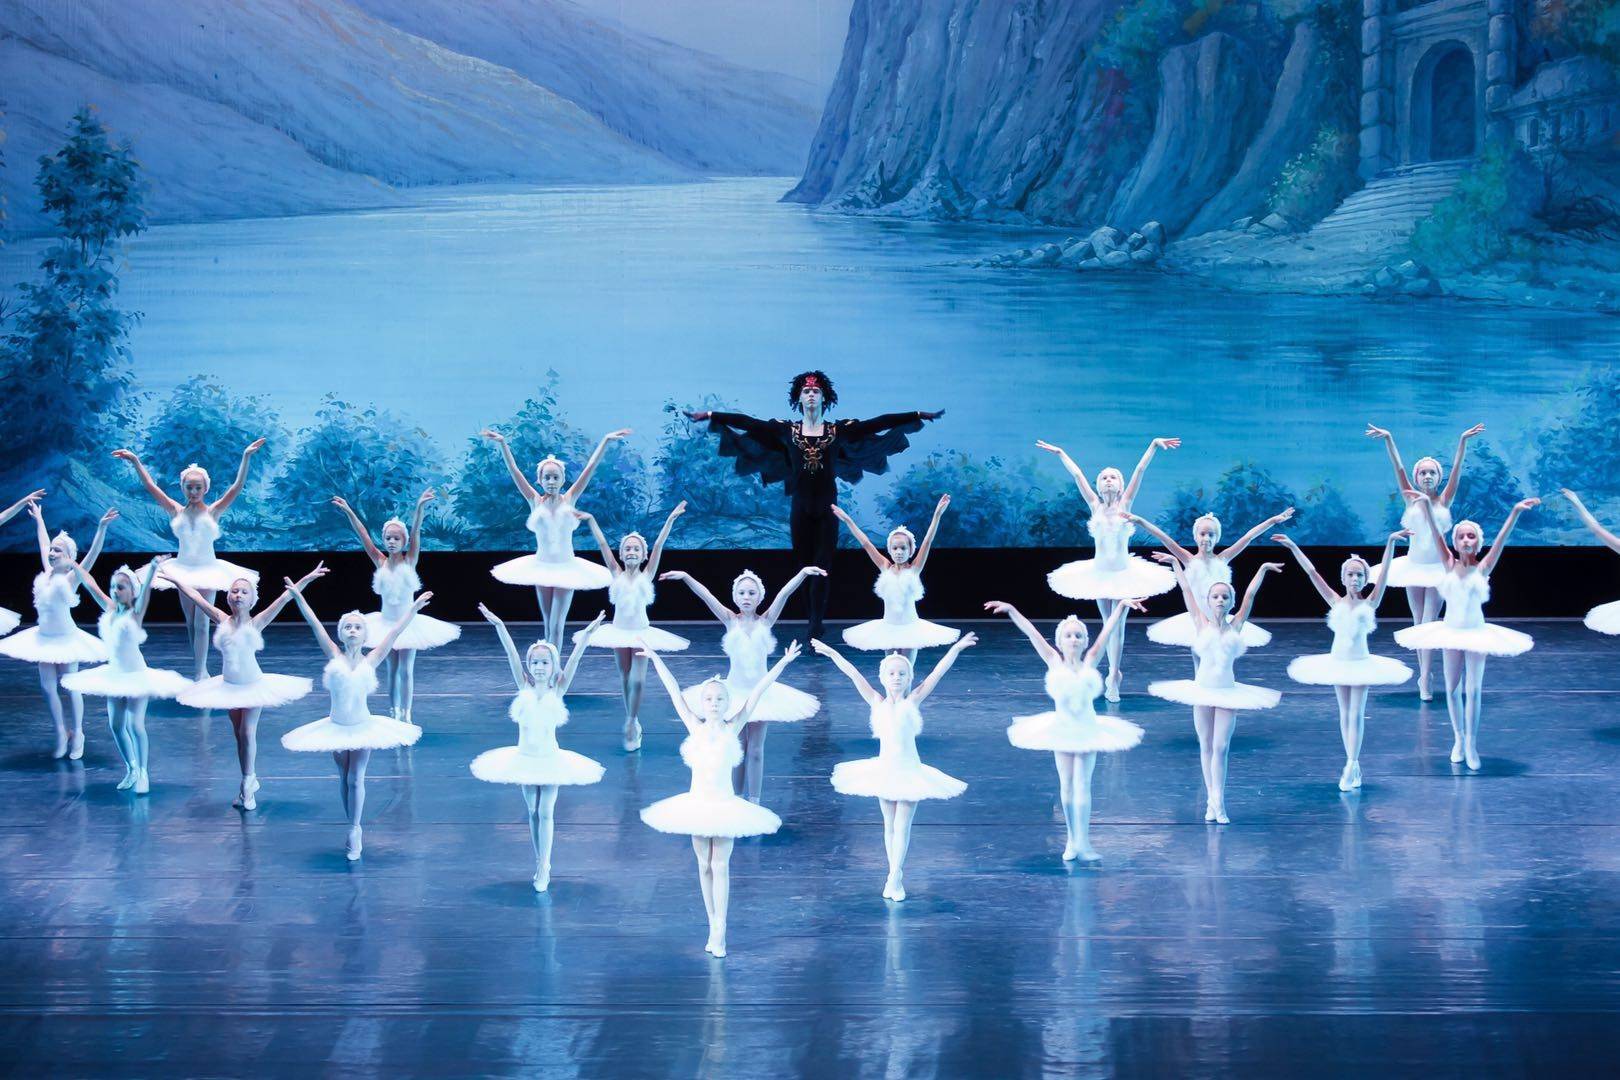 苏州乌克兰基辅儿童芭蕾舞团《天鹅湖》舞台戏剧购票